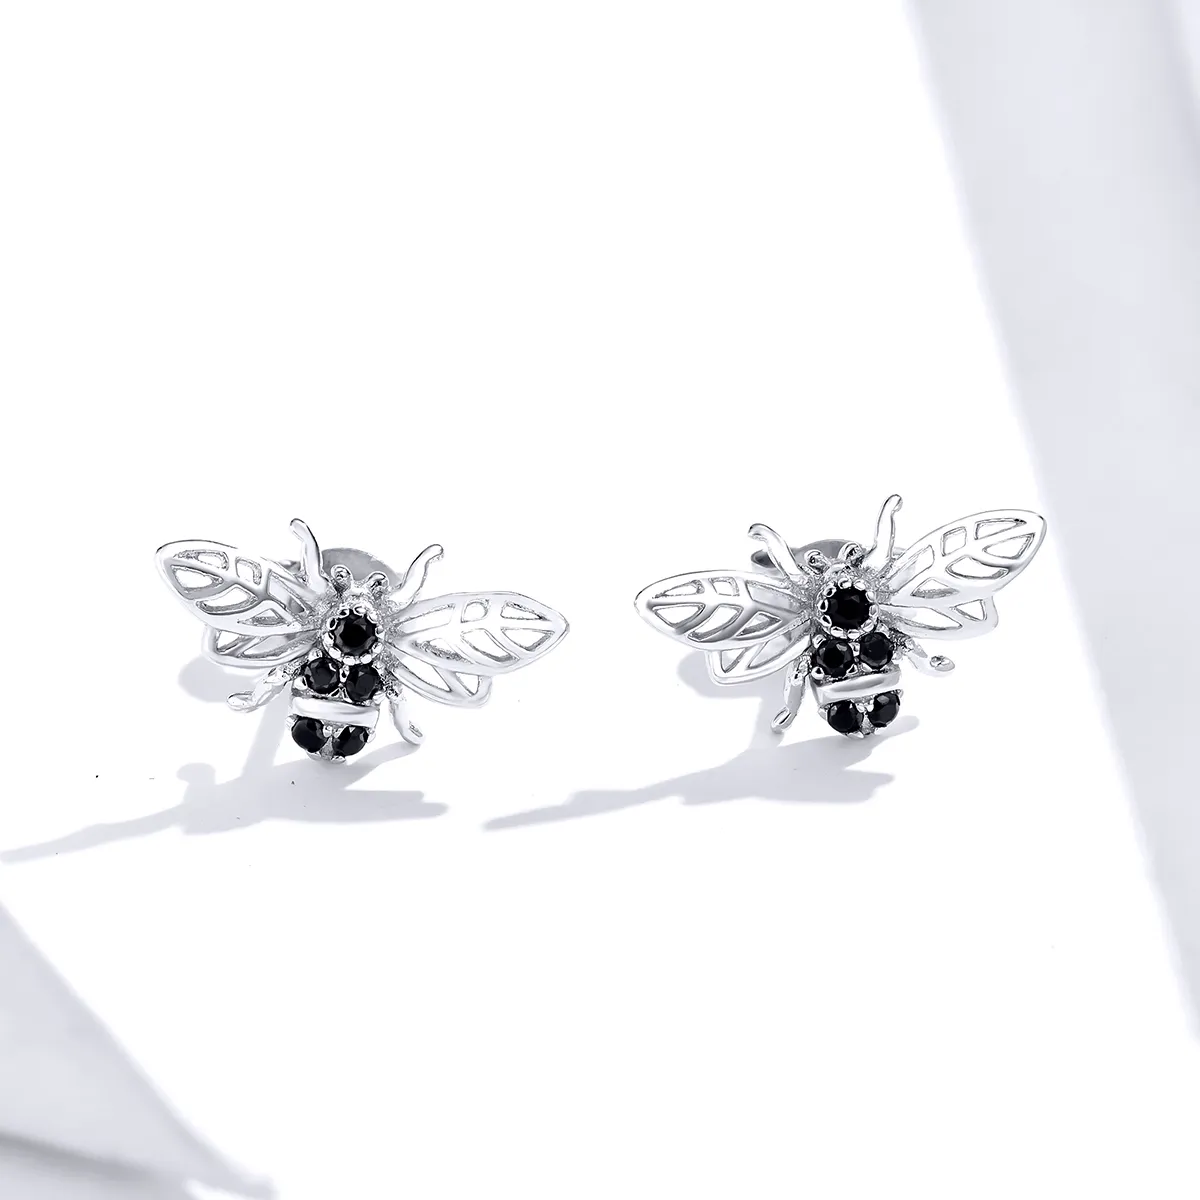 Pandora Style Silver Bee Stud Earrings - SCE846